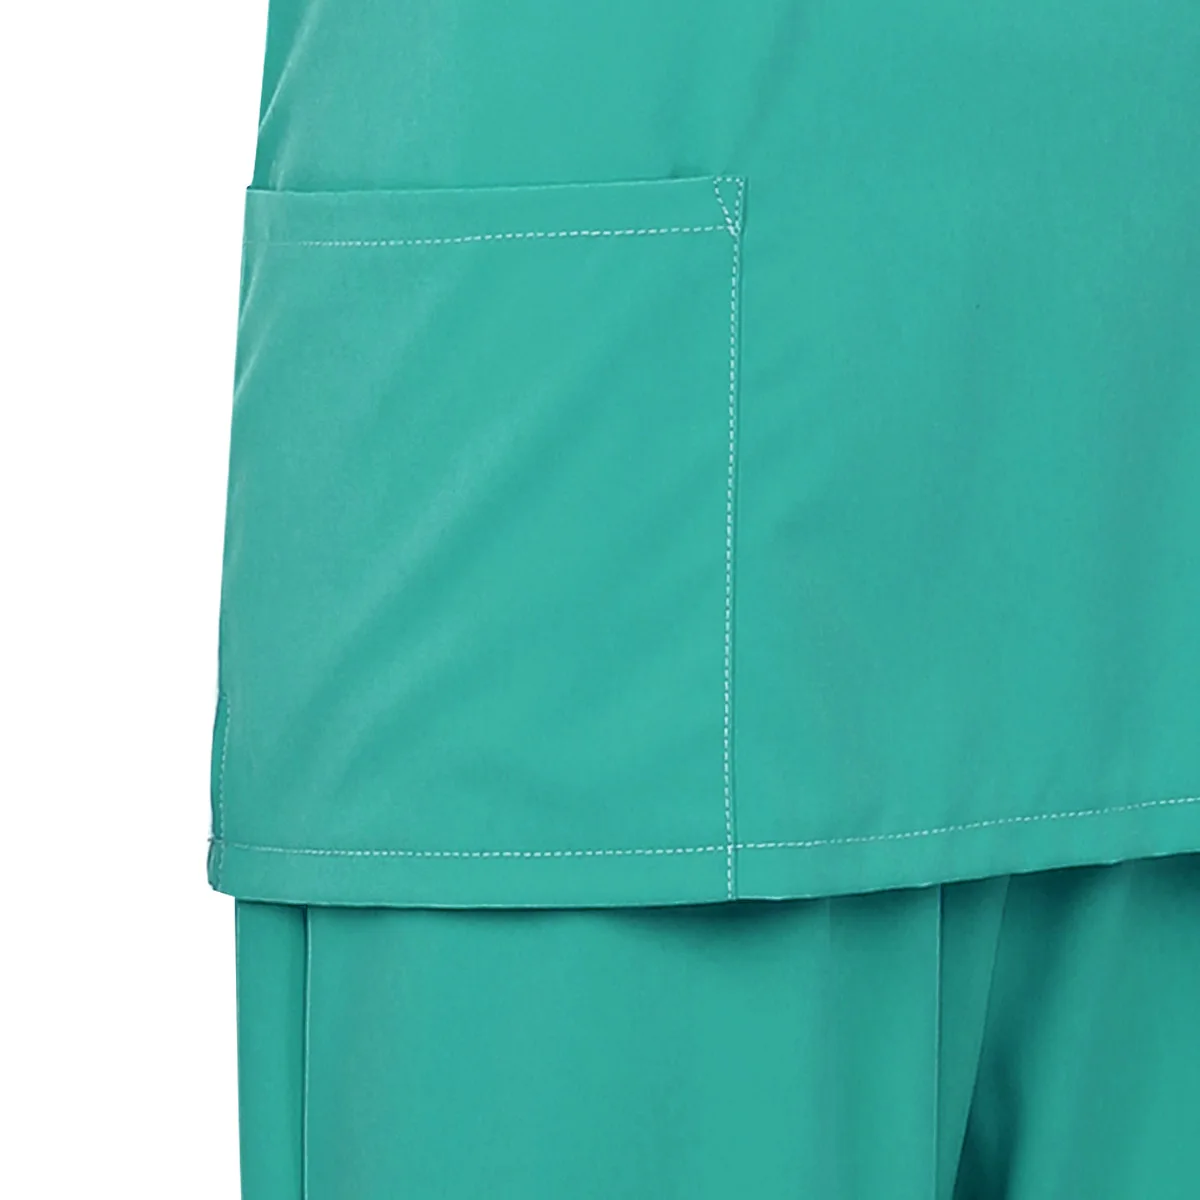 Взрослый медицинский скрабы для медсестер костюм униформа костюмы унисекс медсестры с v-образным вырезом короткий рукав топ с эластичной талией длинные брюки